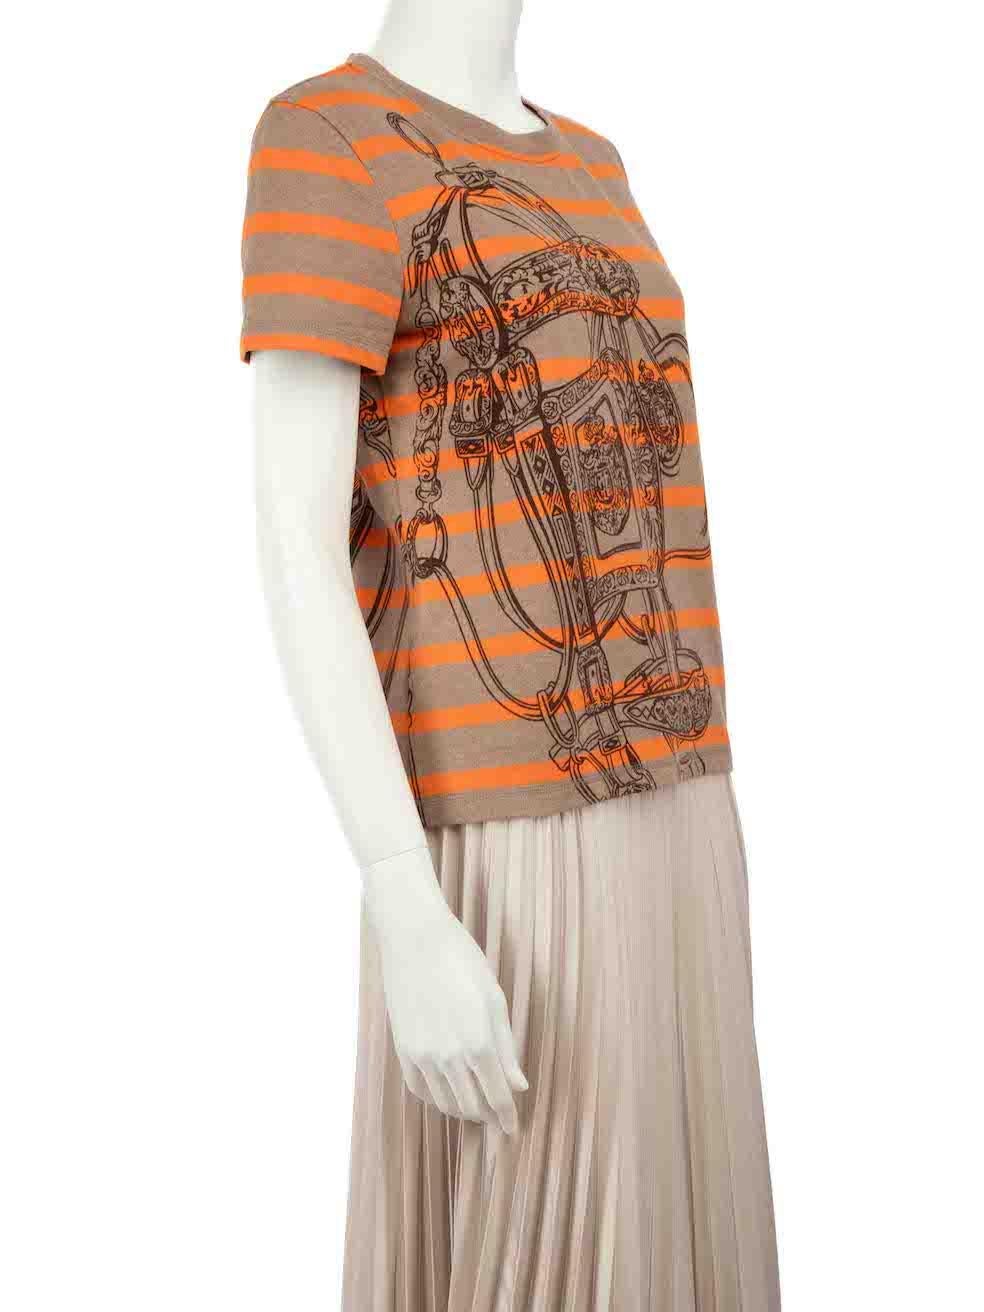 CONDITION ist nie getragen. Keine sichtbaren Abnutzungserscheinungen an der Oberseite sind bei diesem neuen Hermès Designer-Wiederverkaufsartikel zu erkennen.
 
 
 
 Einzelheiten
 
 
 Braun
 
 Baumwolle
 
 T-shirt
 
 Orange gestreiftes Muster
 
